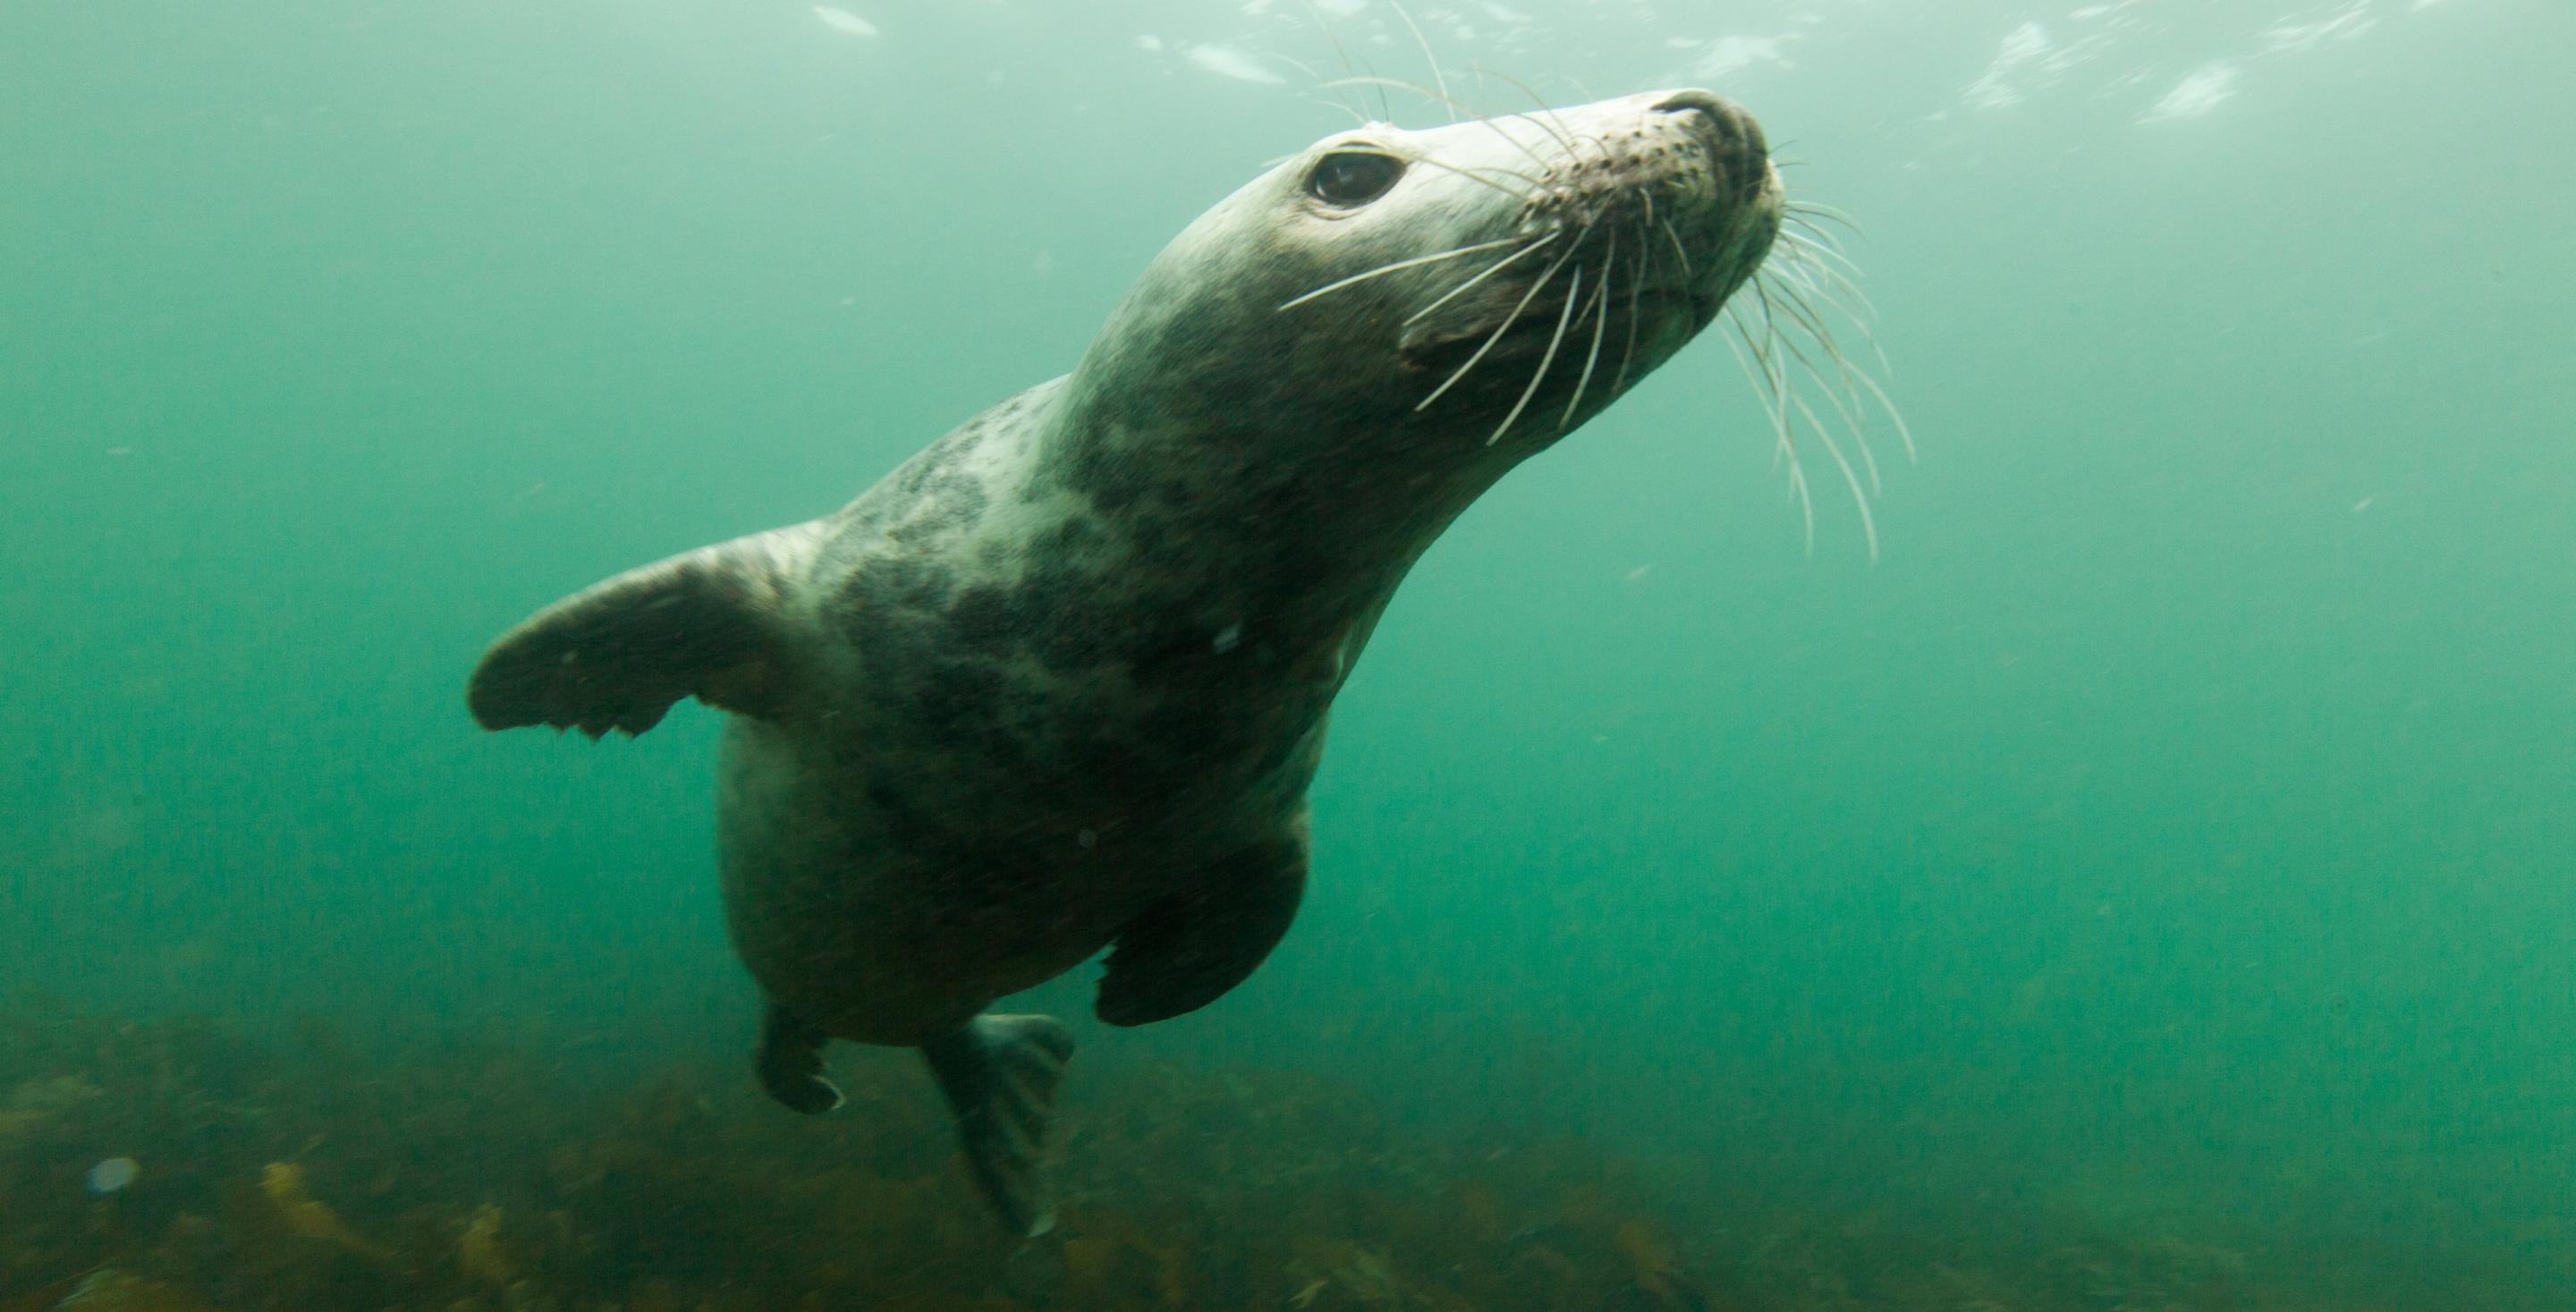 Zone protégée depuis 1945, les îles de Farnes abritent une colonie particulièrement importante de phoques (Phoca vitulina) – Angleterre